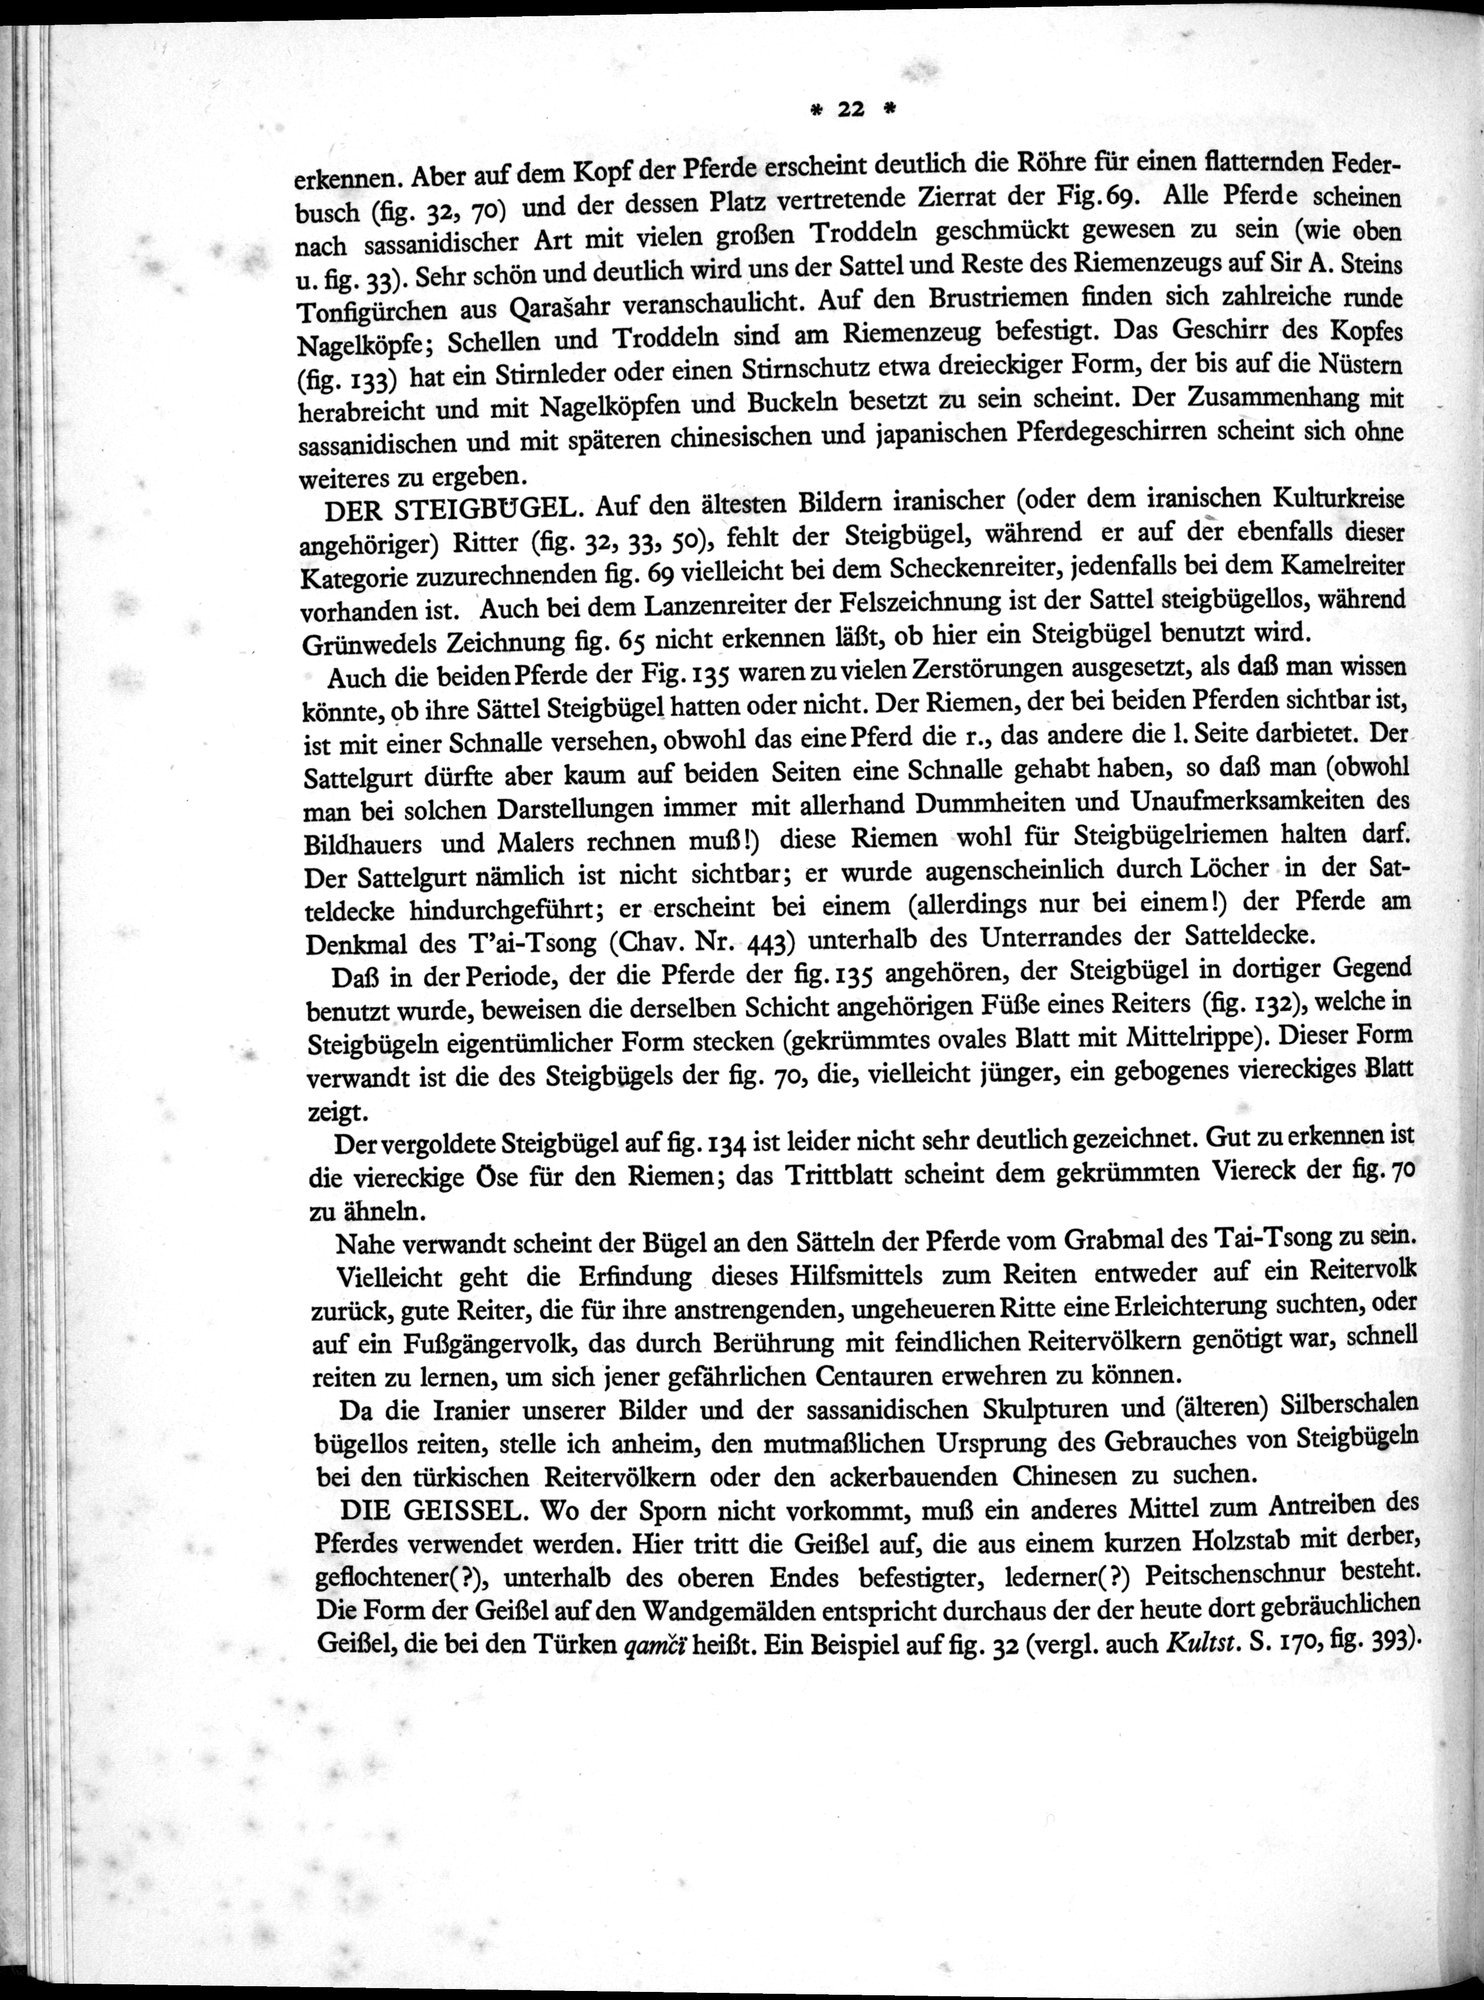 Bilderatlas zur Kunst und Kulturgeschichte Mittel-Asiens : vol.1 / Page 26 (Grayscale High Resolution Image)